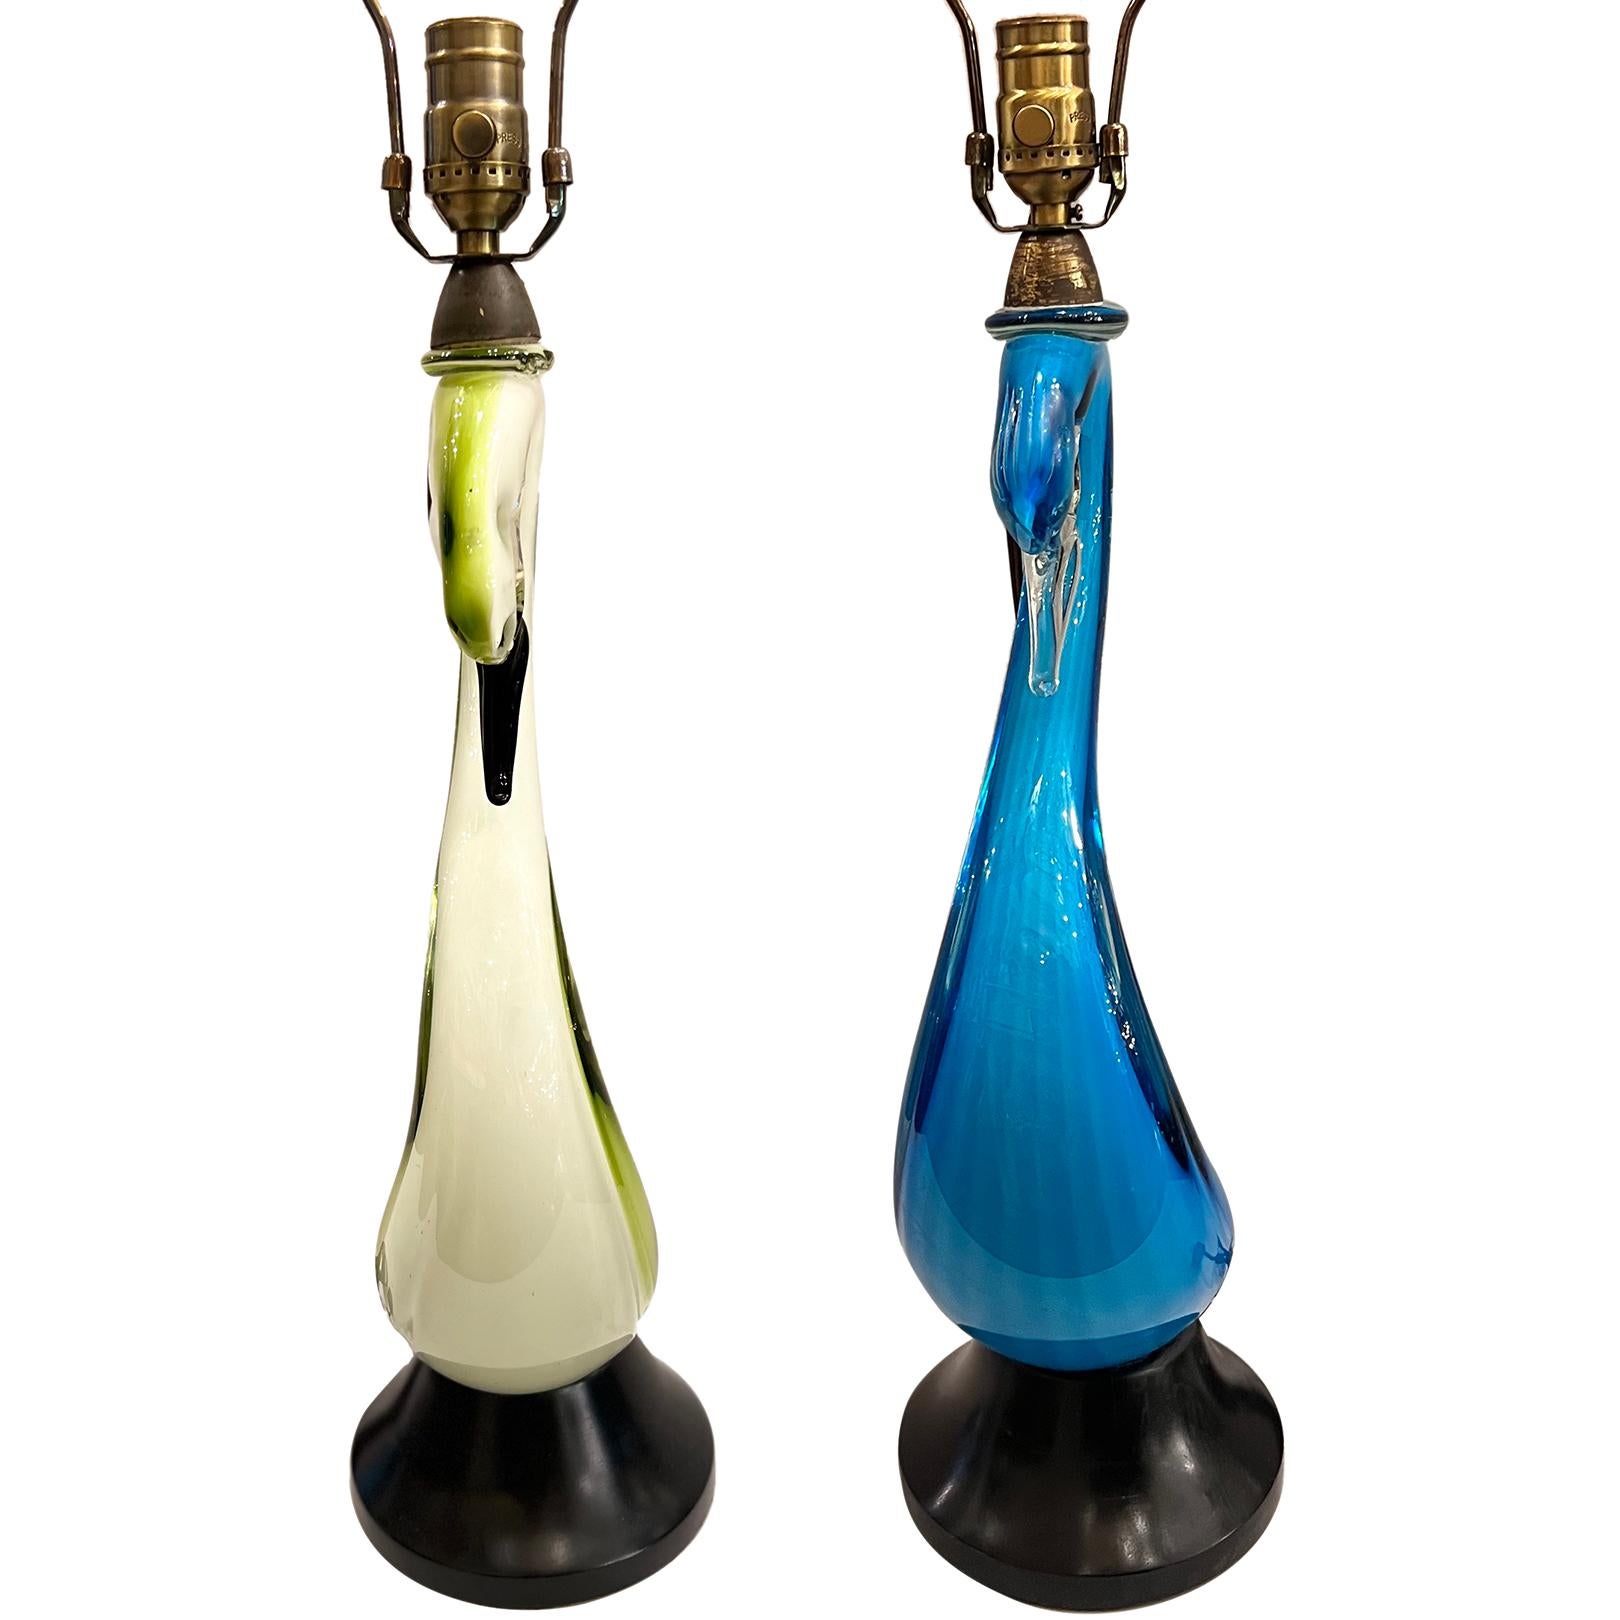 Paire de lampes en forme de cygne de Murano, assorties, datant des années 1960, avec base en bois.

Mesures :
Hauteur du corps : 18.5